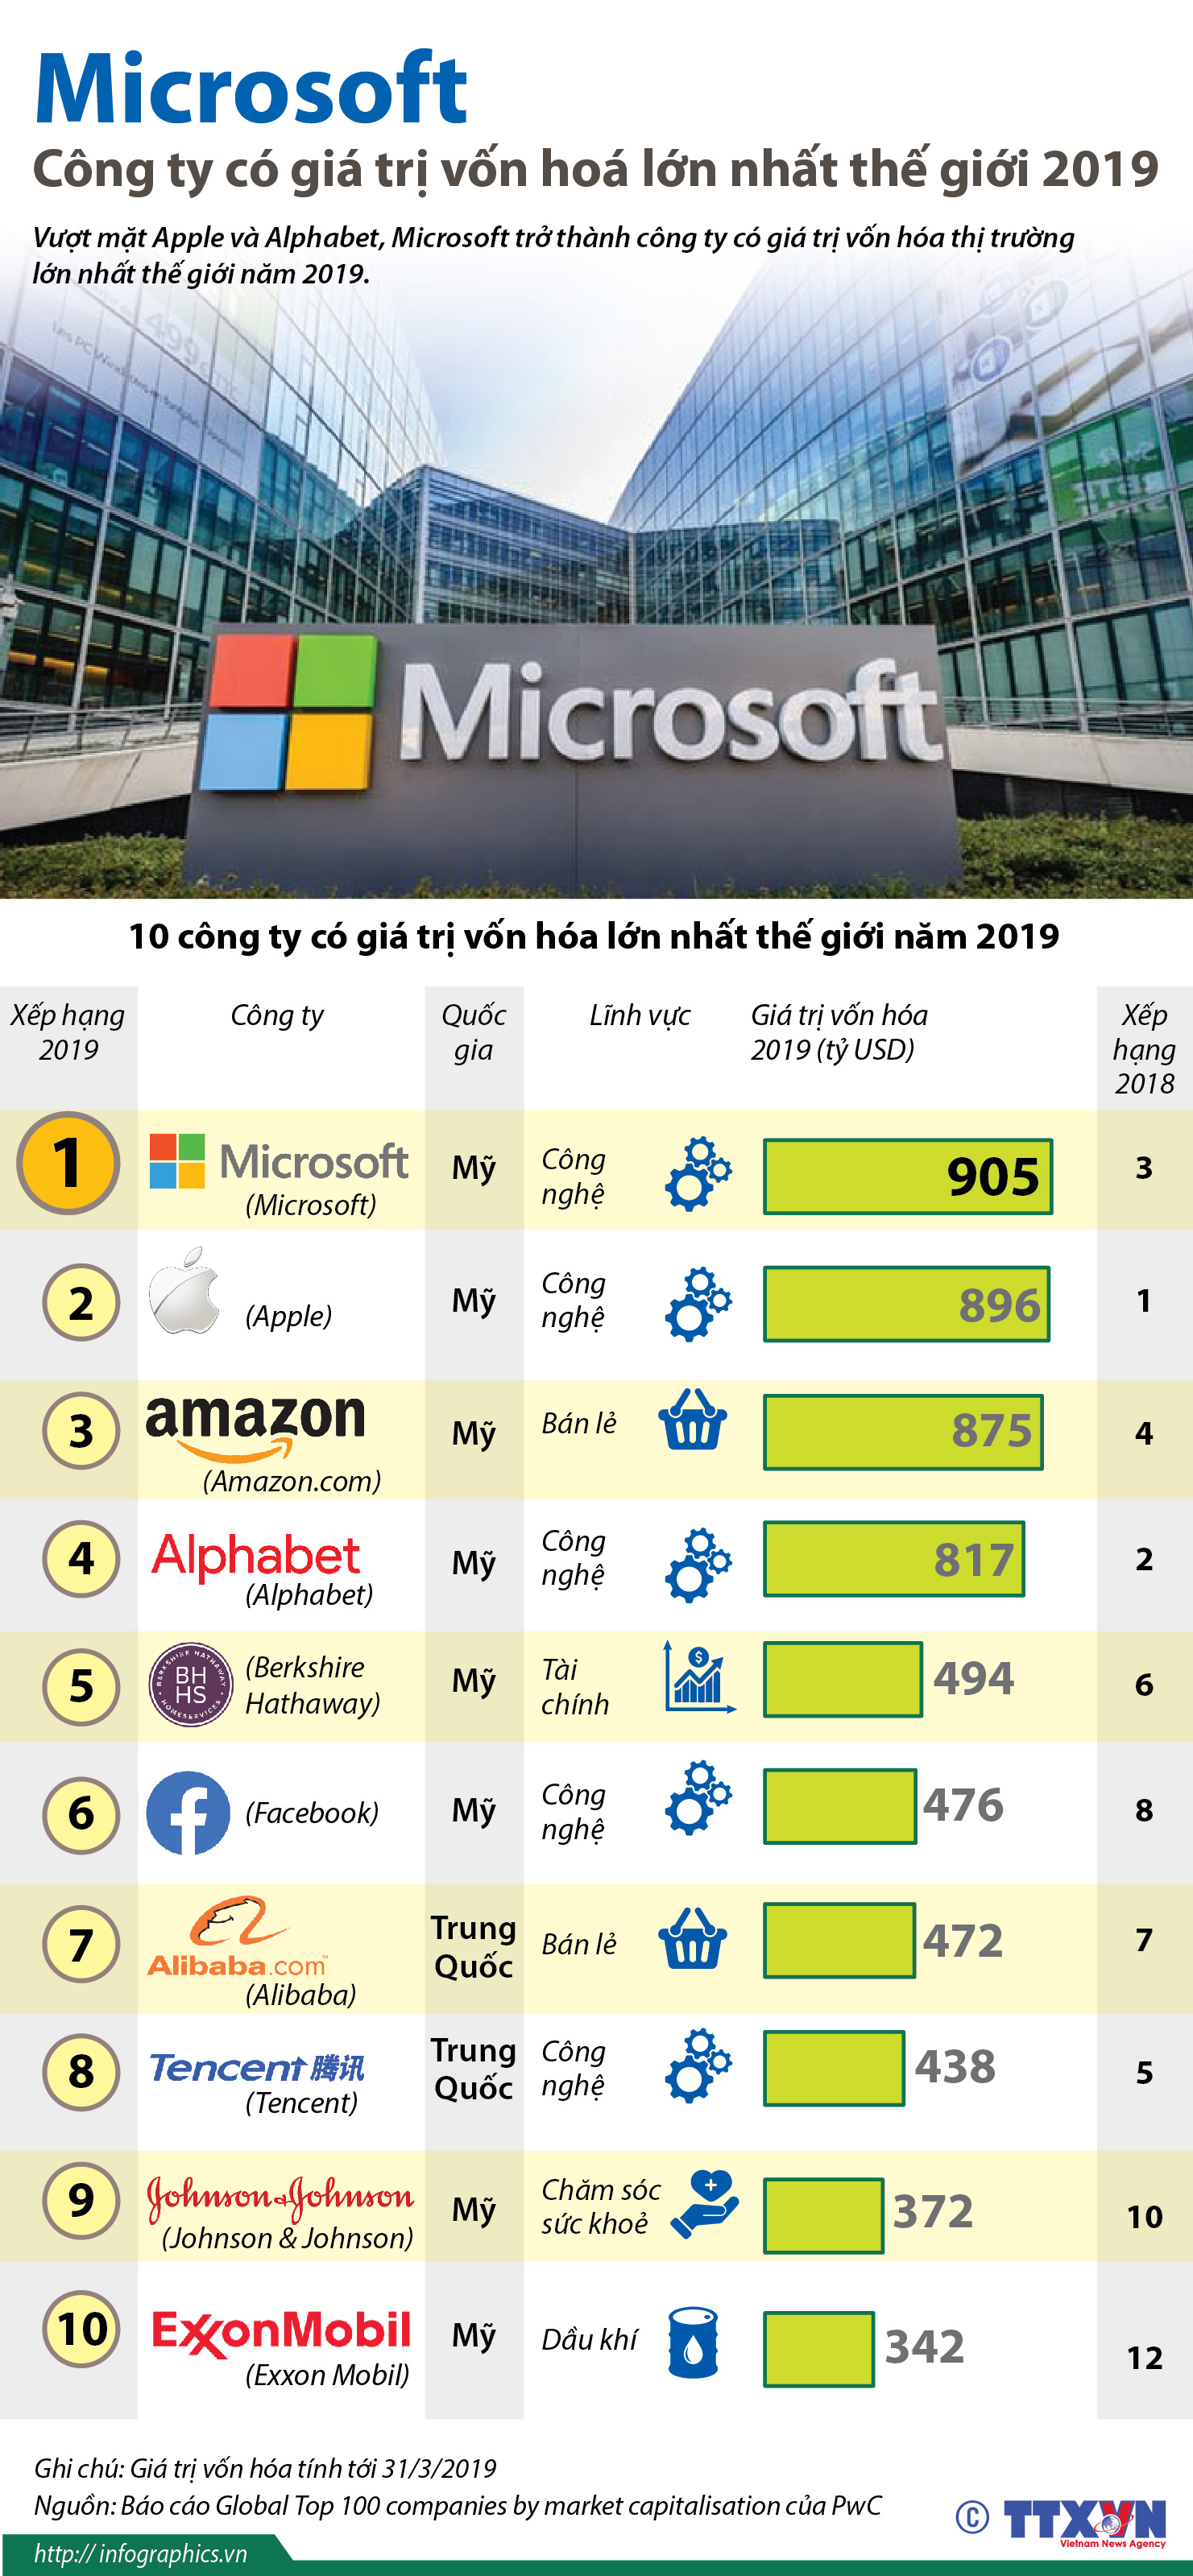 Vốn hoá Microsoft 2019 tăng trưởng
Năm 2019 là năm đánh dấu sự tăng trưởng ấn tượng của Microsoft khi vốn hóa của họ tăng mạnh. Với sự đổi mới trong công nghệ, Microsoft đang có những bước tiến mới trong lĩnh vực giao tiếp, đồng thời, họ cũng đang đưa ra các sản phẩm và dịch vụ mới để duy trì vị thế của mình trong thị trường công nghệ. Hãy khám phá xem Microsoft đã hướng tới đâu trong tương lai.